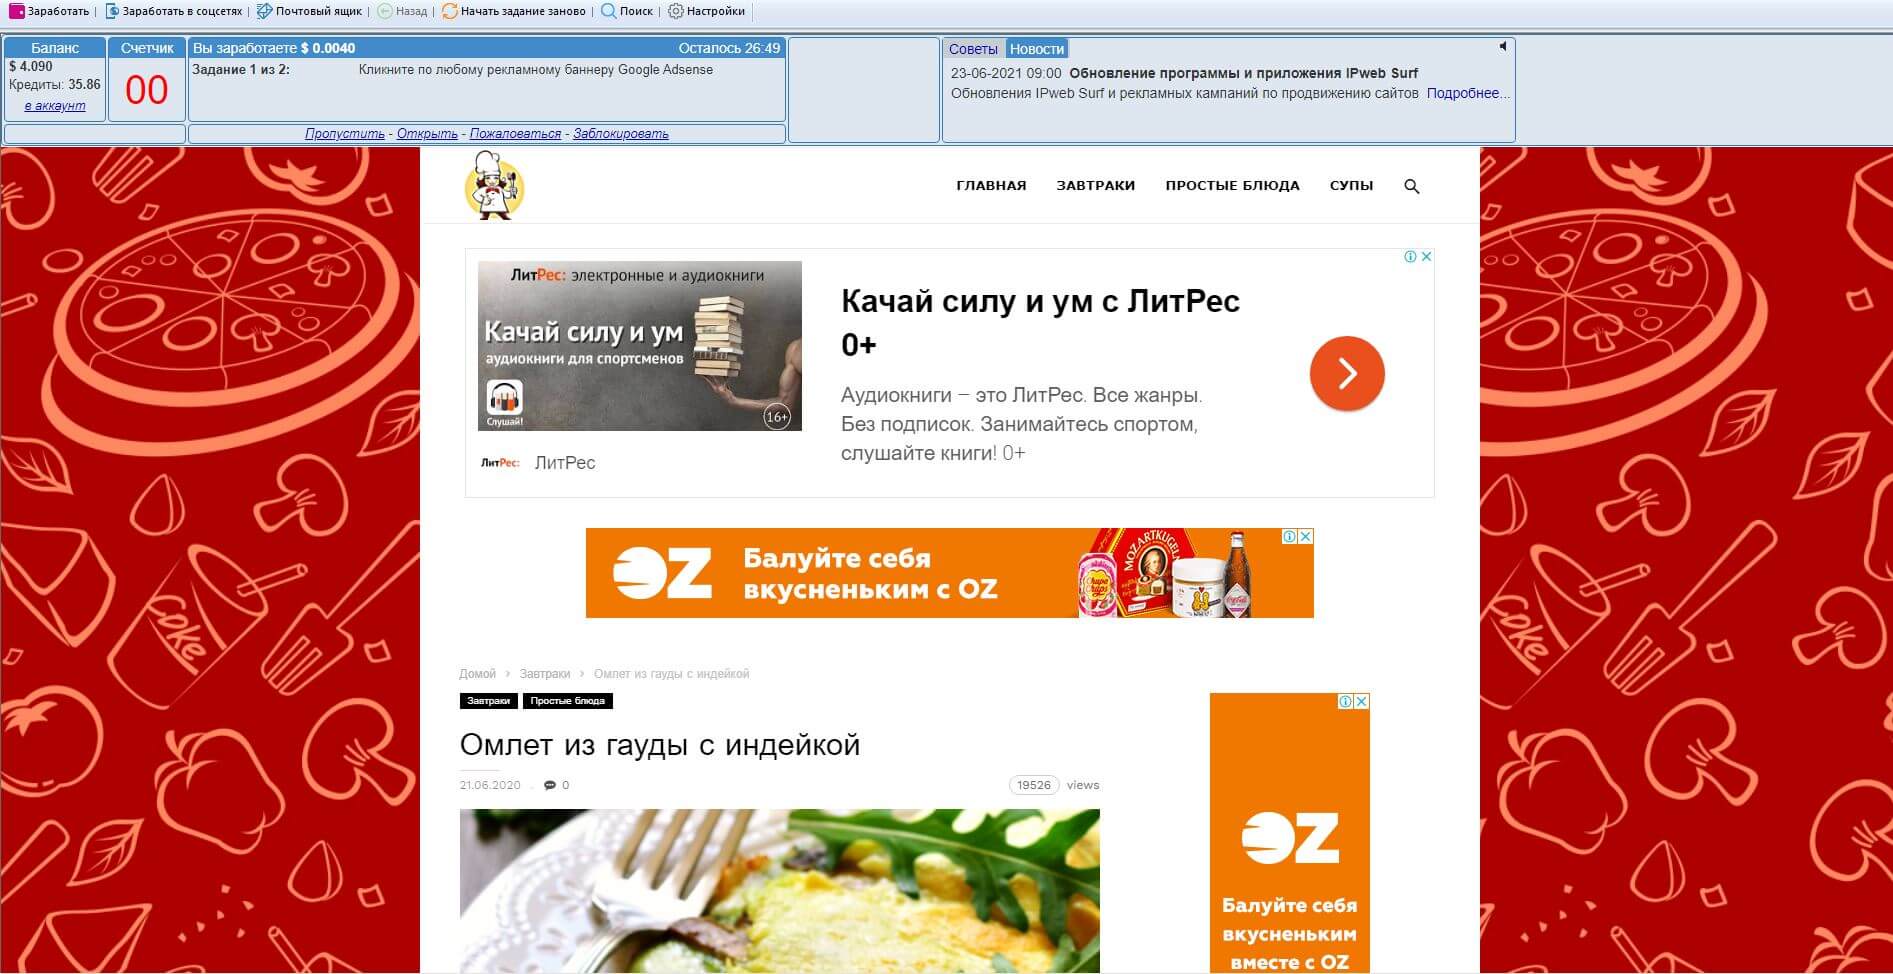 ipweb-ru-programma-dlya-zarabotka-stranicza-serfing